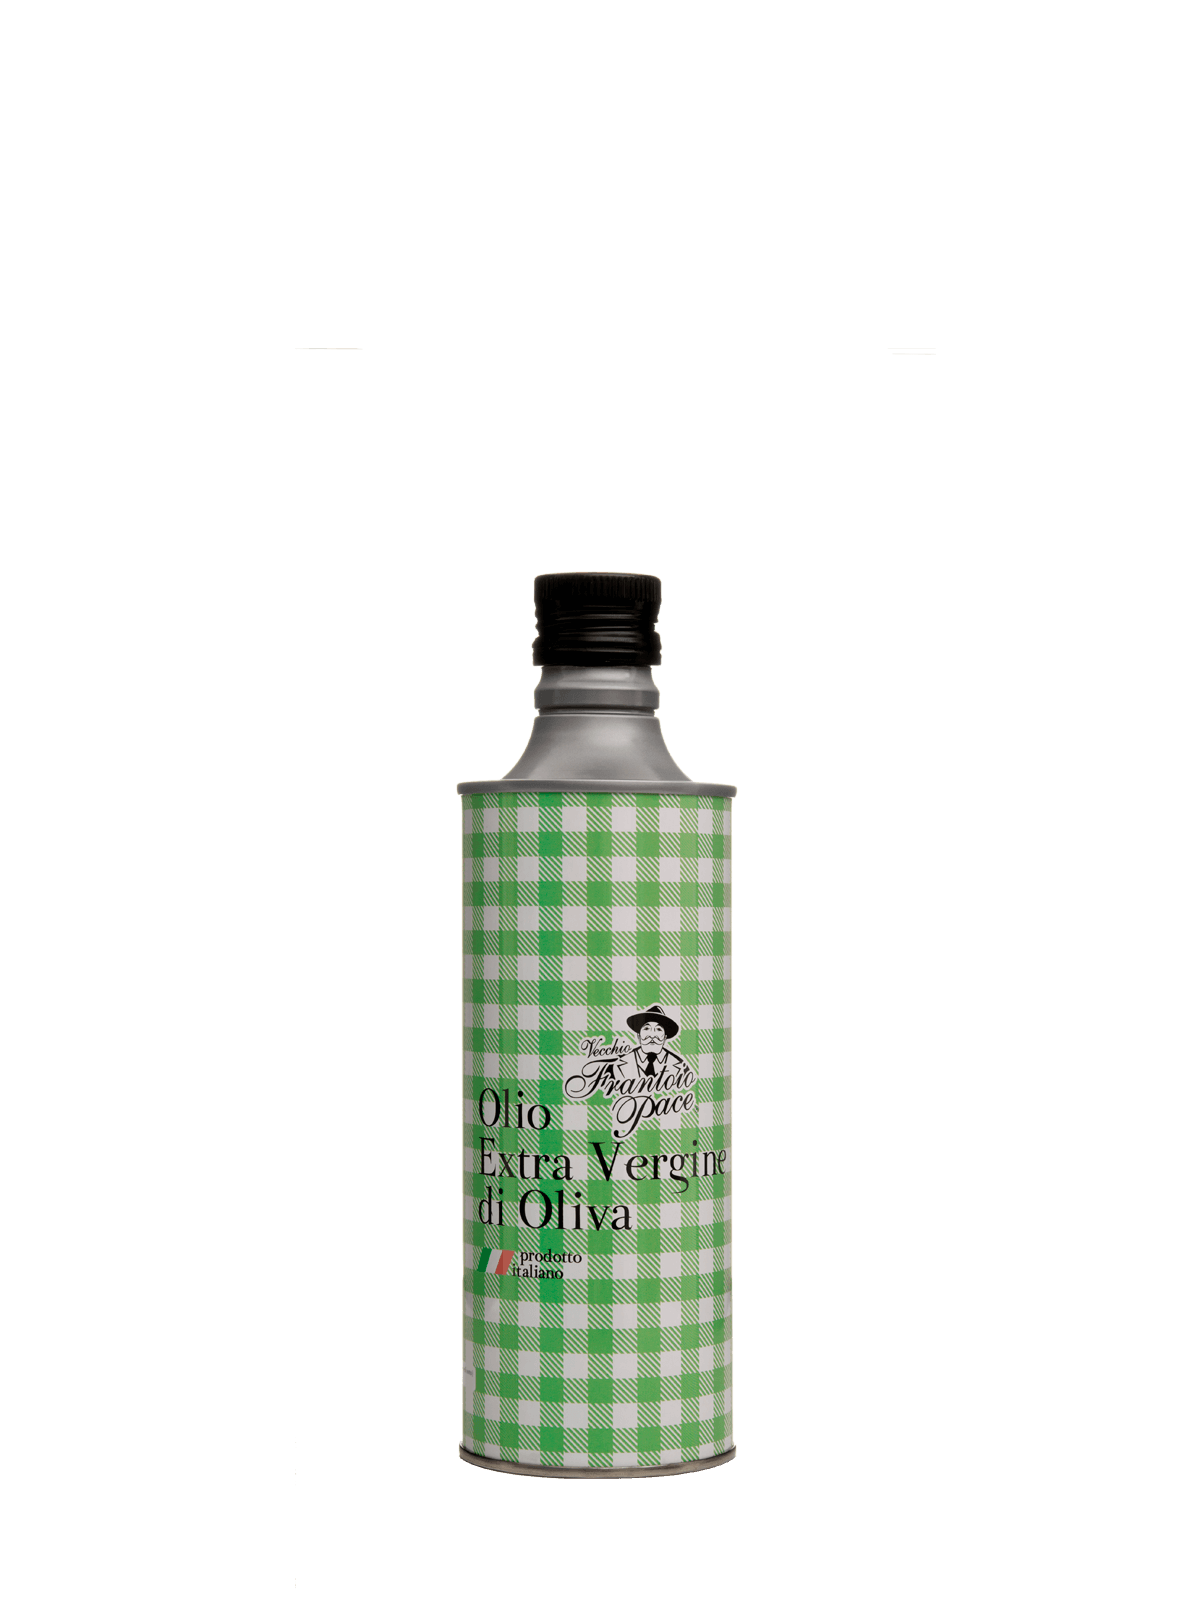 Olio EVO Monovarietale Coratina 100% - Prodotto a freddo - Bottiglia Tovagliato 0,5L - Frantoio Leone Pace